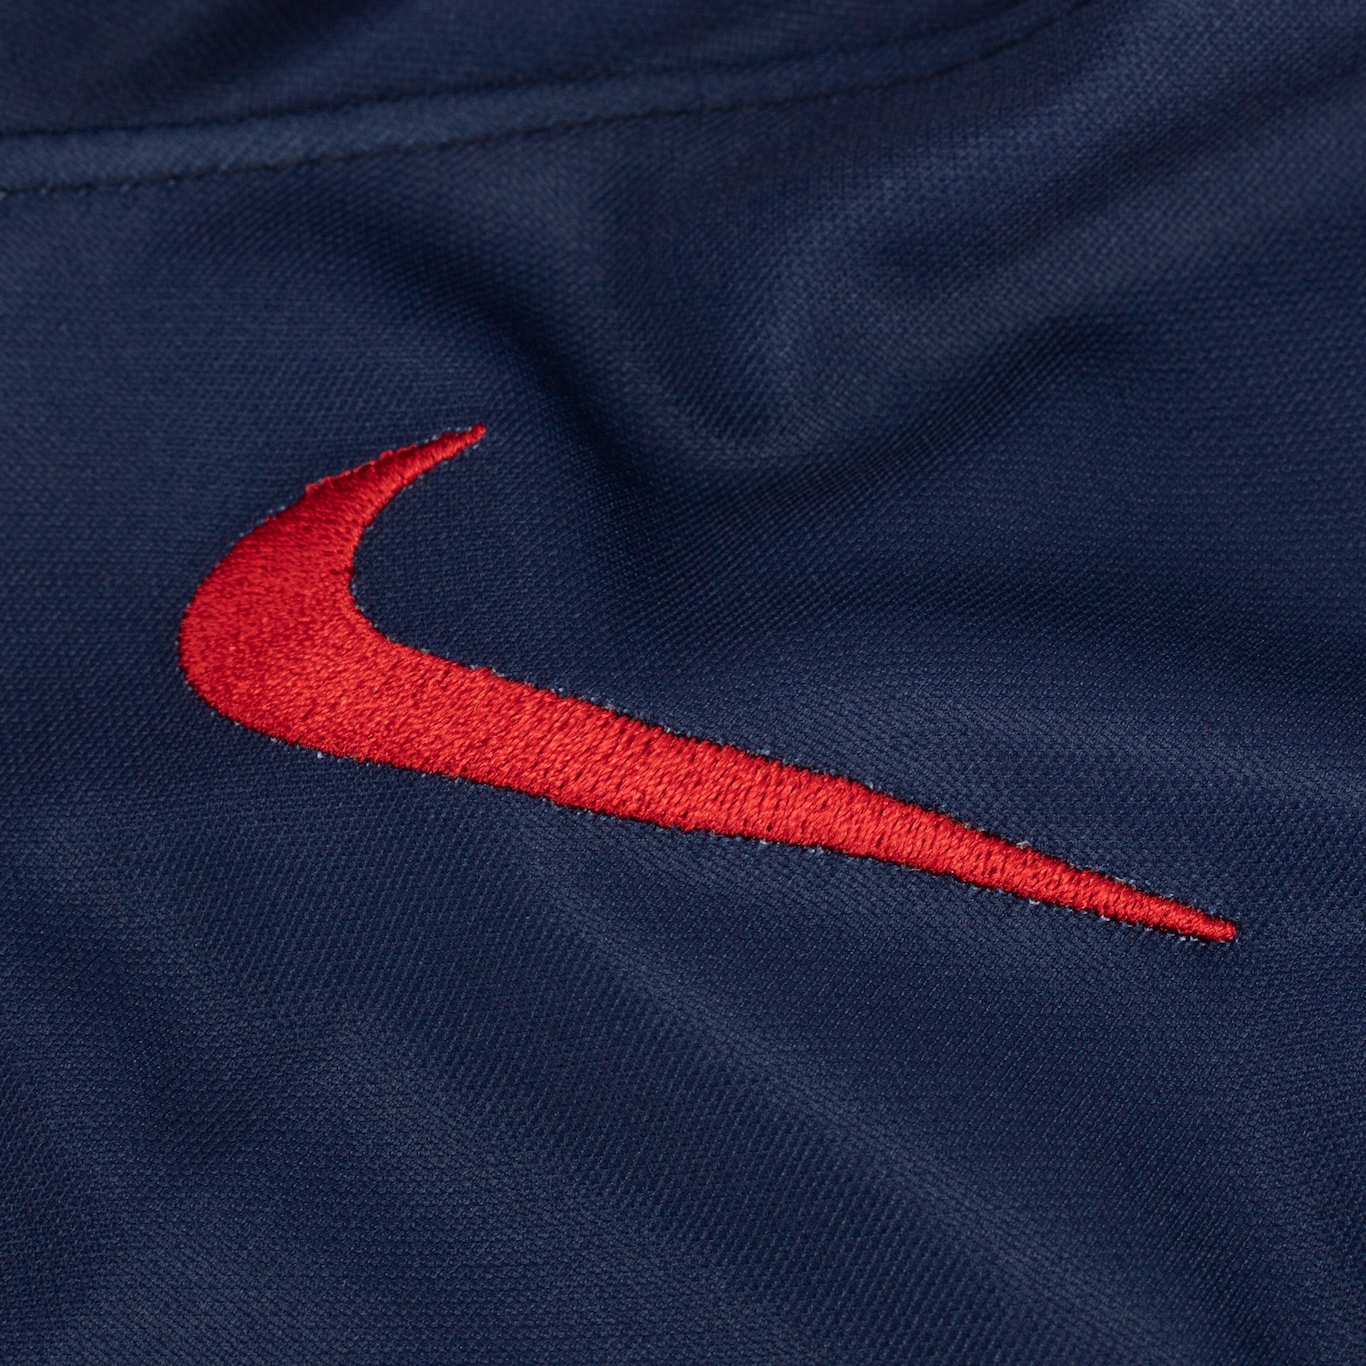 Camisa PSG I 23 Nike Torcedor - Infantil - Foto 5